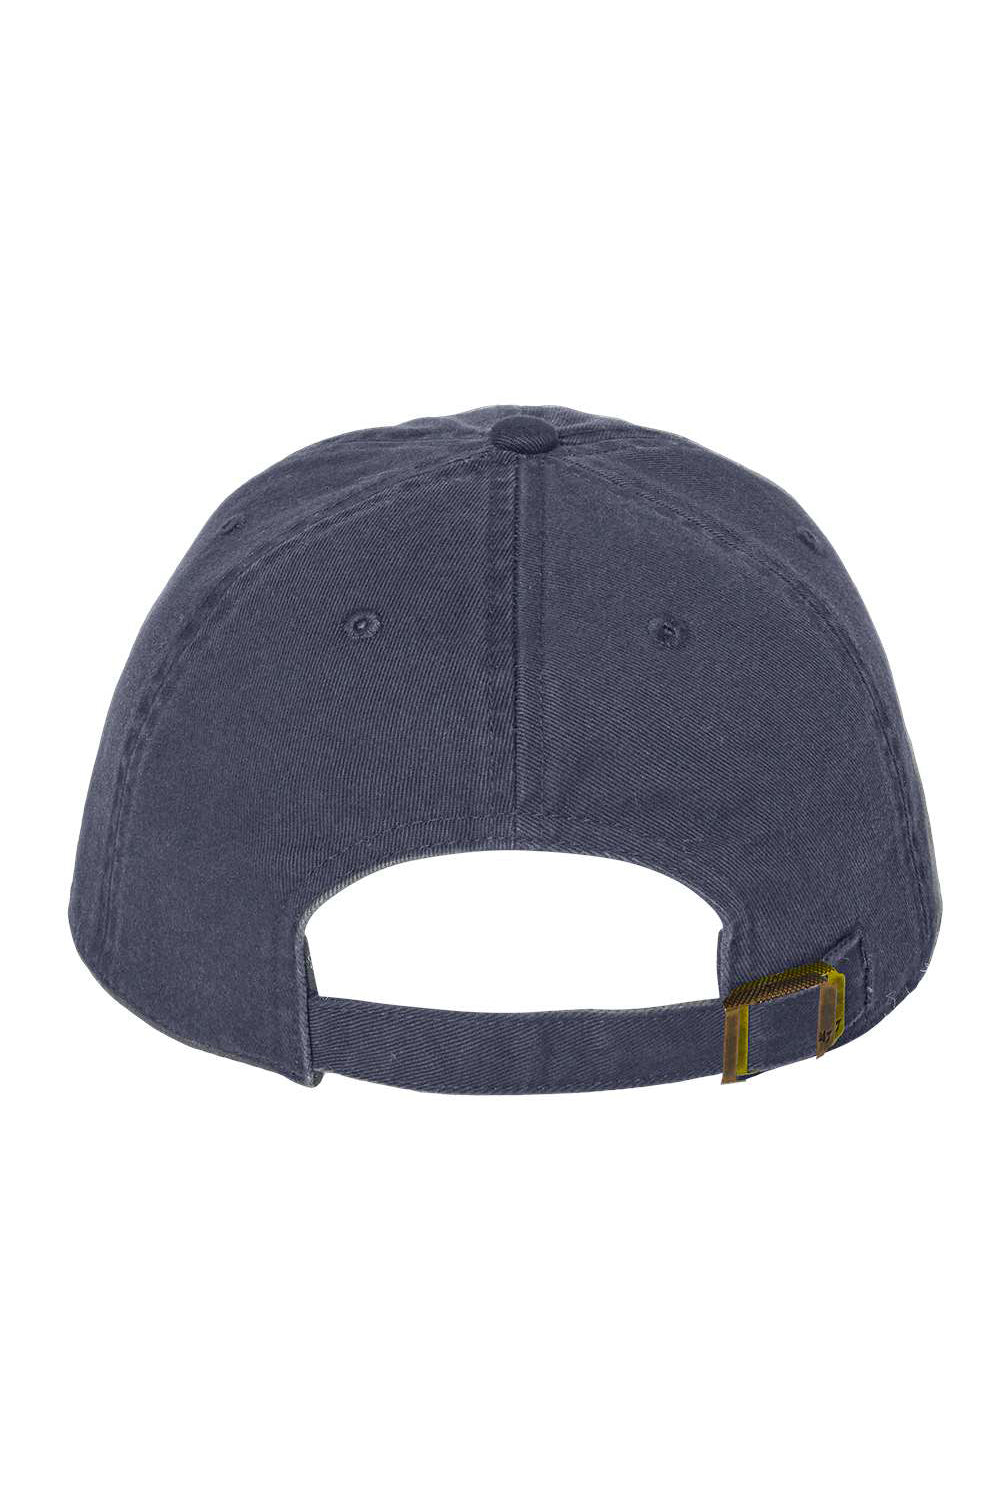 47 Brand 4700 Mens Clean Up Adjustable Hat Vintage Navy Blue Flat Back